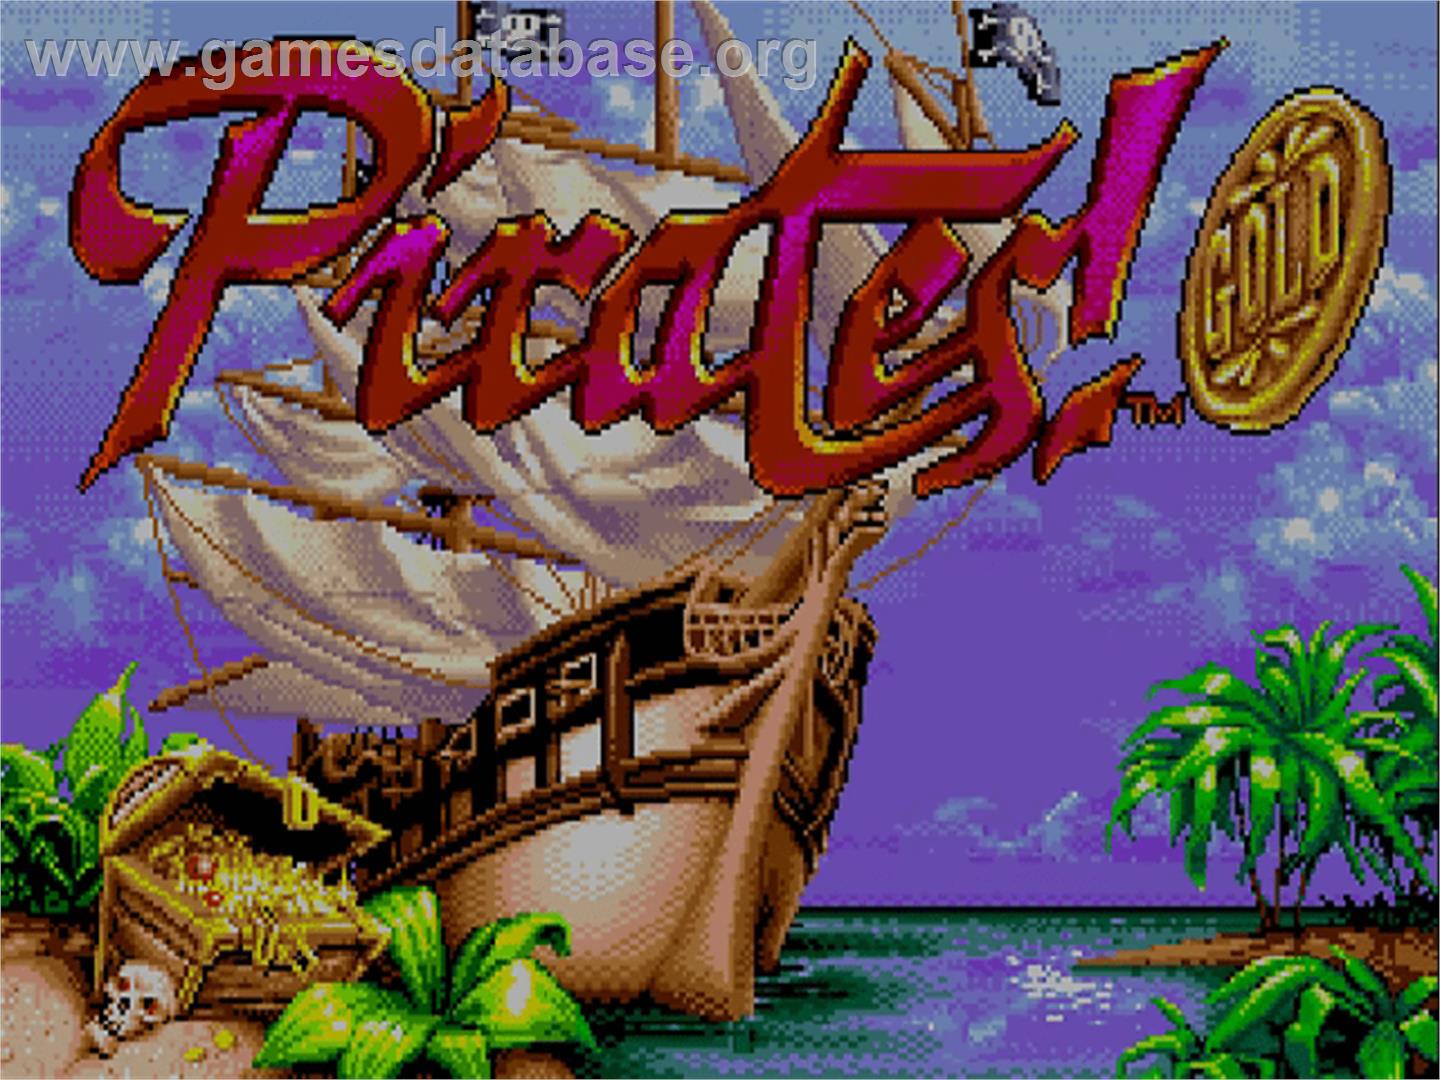 Pirates! Gold - Commodore Amiga CD32 - Artwork - Title Screen